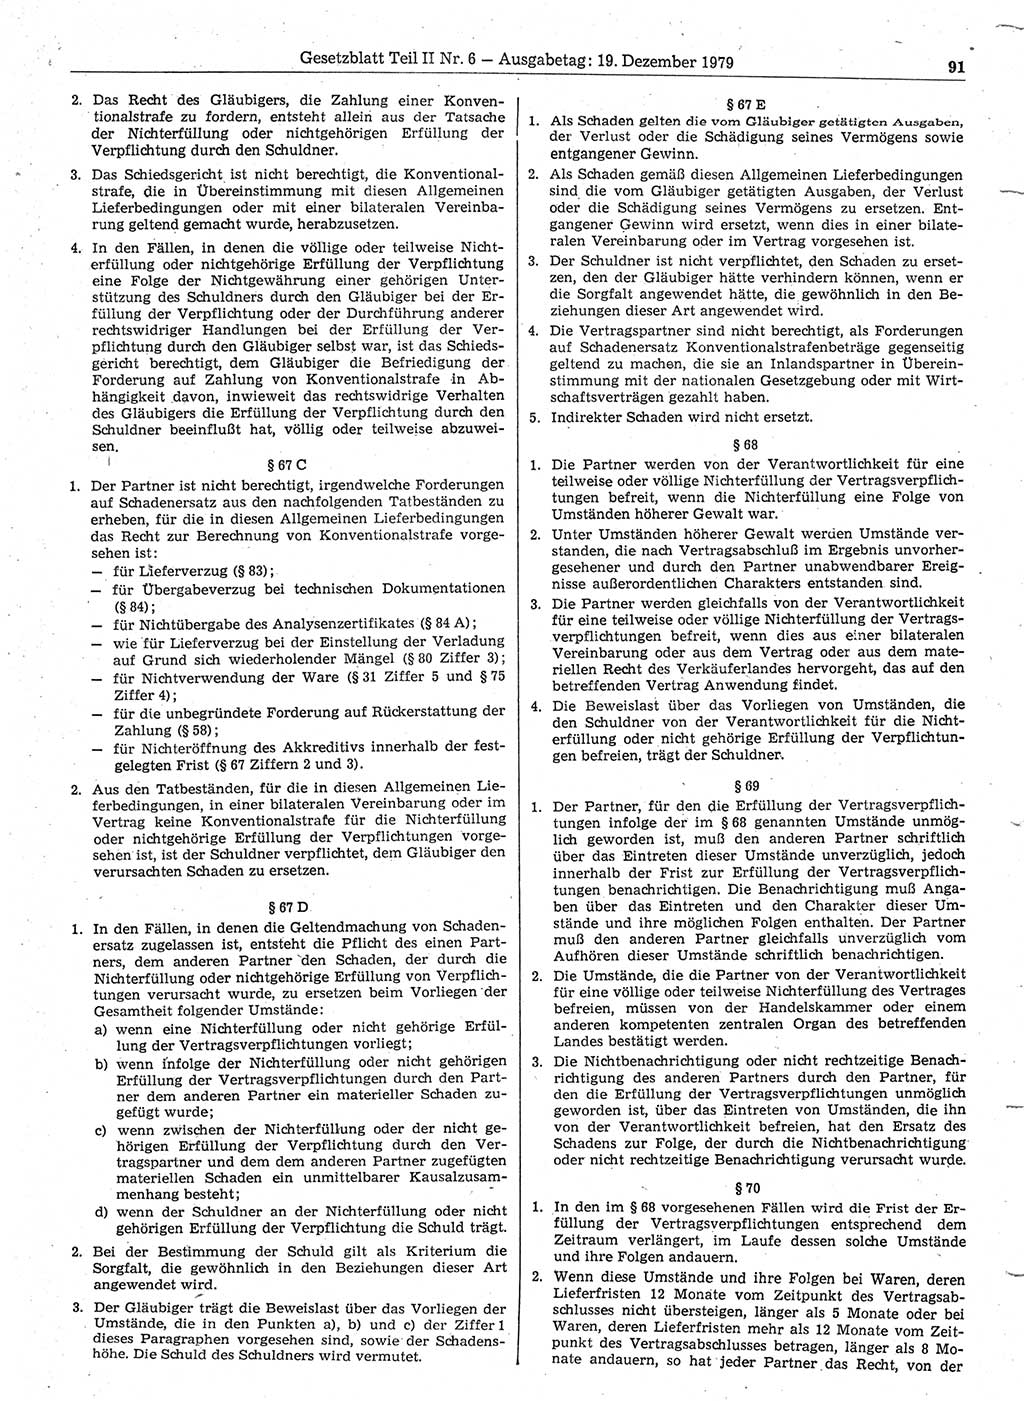 Gesetzblatt (GBl.) der Deutschen Demokratischen Republik (DDR) Teil ⅠⅠ 1979, Seite 91 (GBl. DDR ⅠⅠ 1979, S. 91)